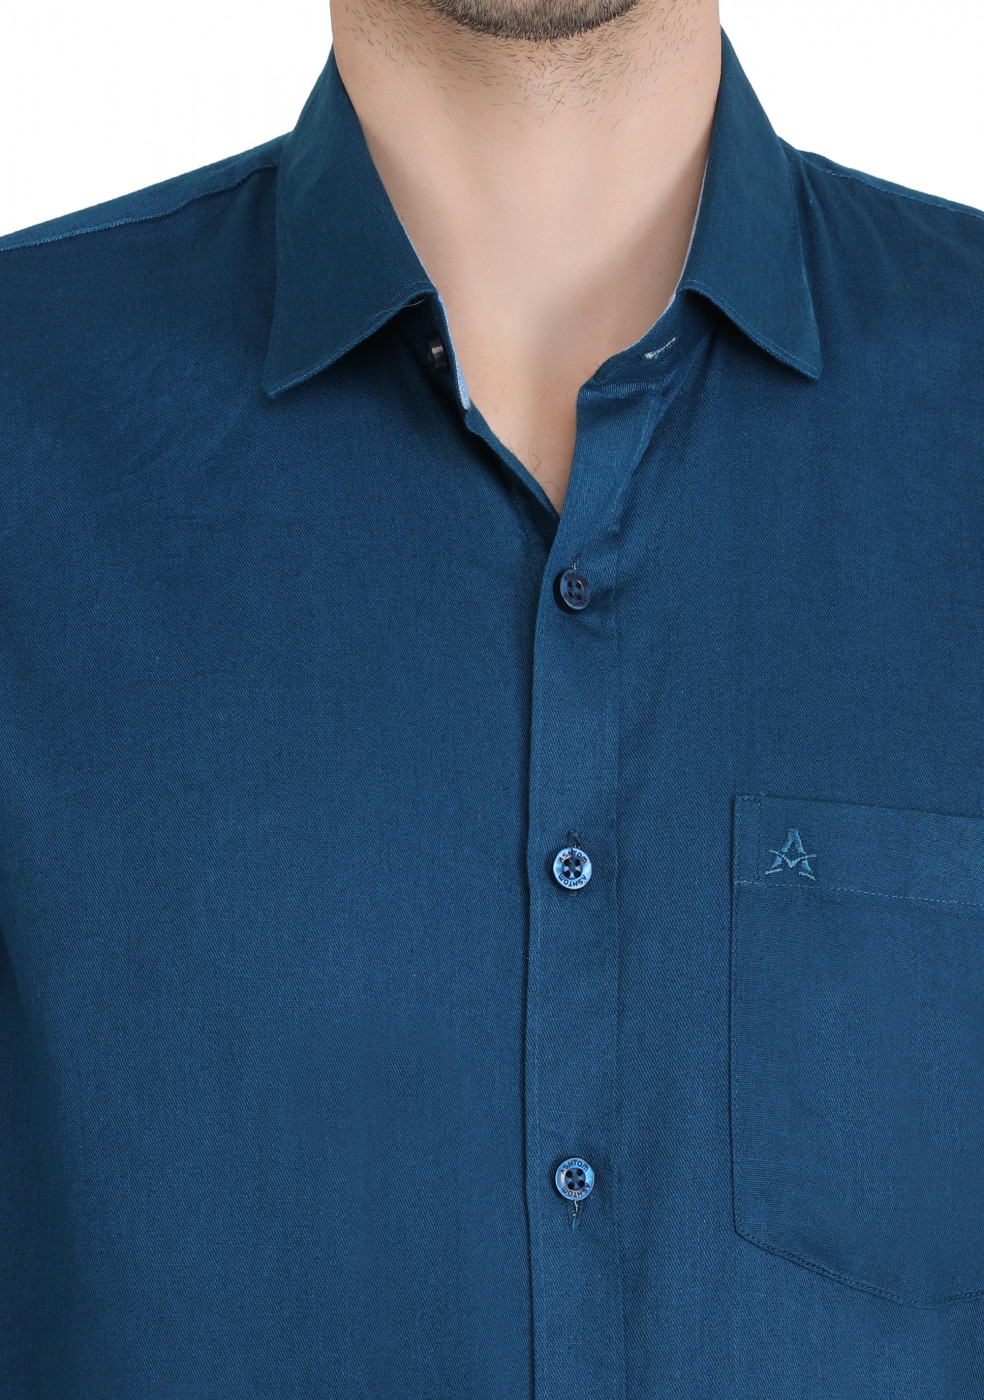 Blue Plain Formal Cotton Shirt For Men